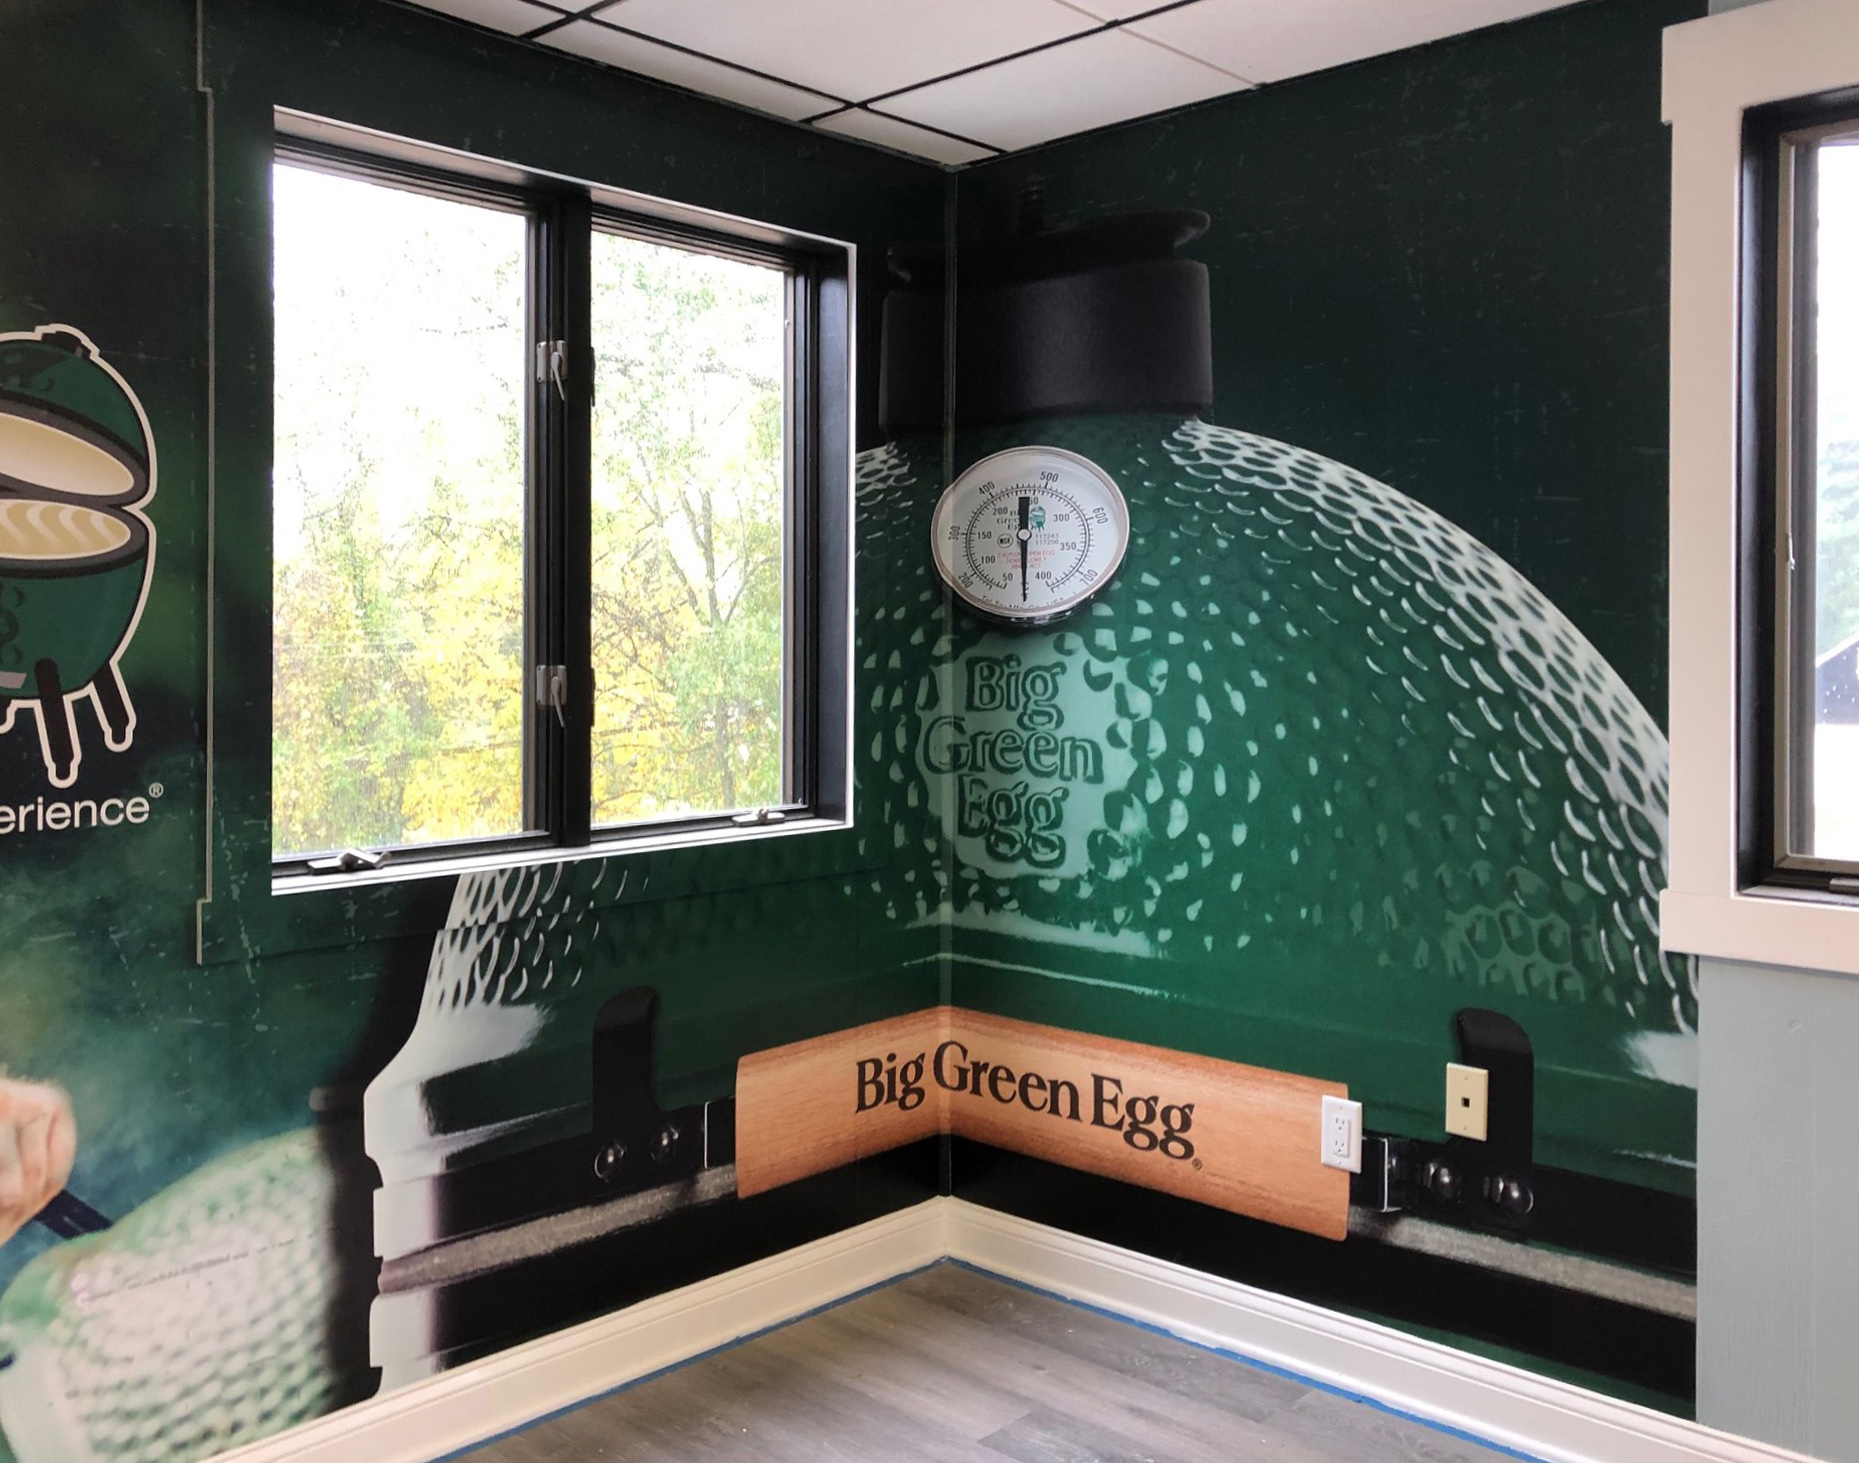 Big Green Egg wall graphics